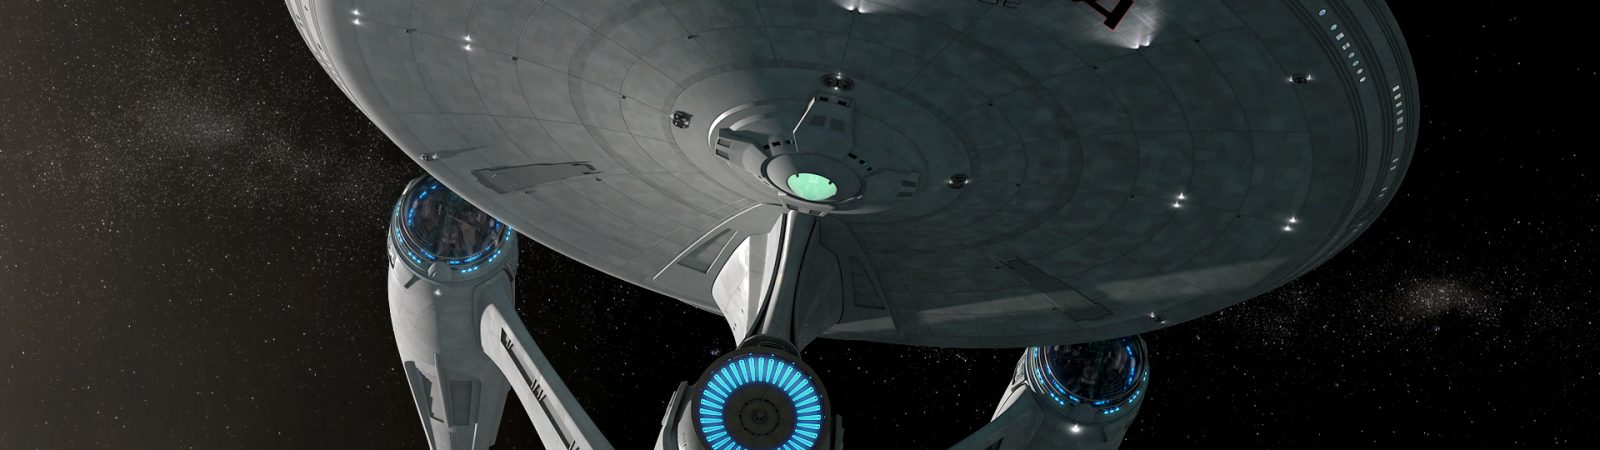 Enterprise-A update #6